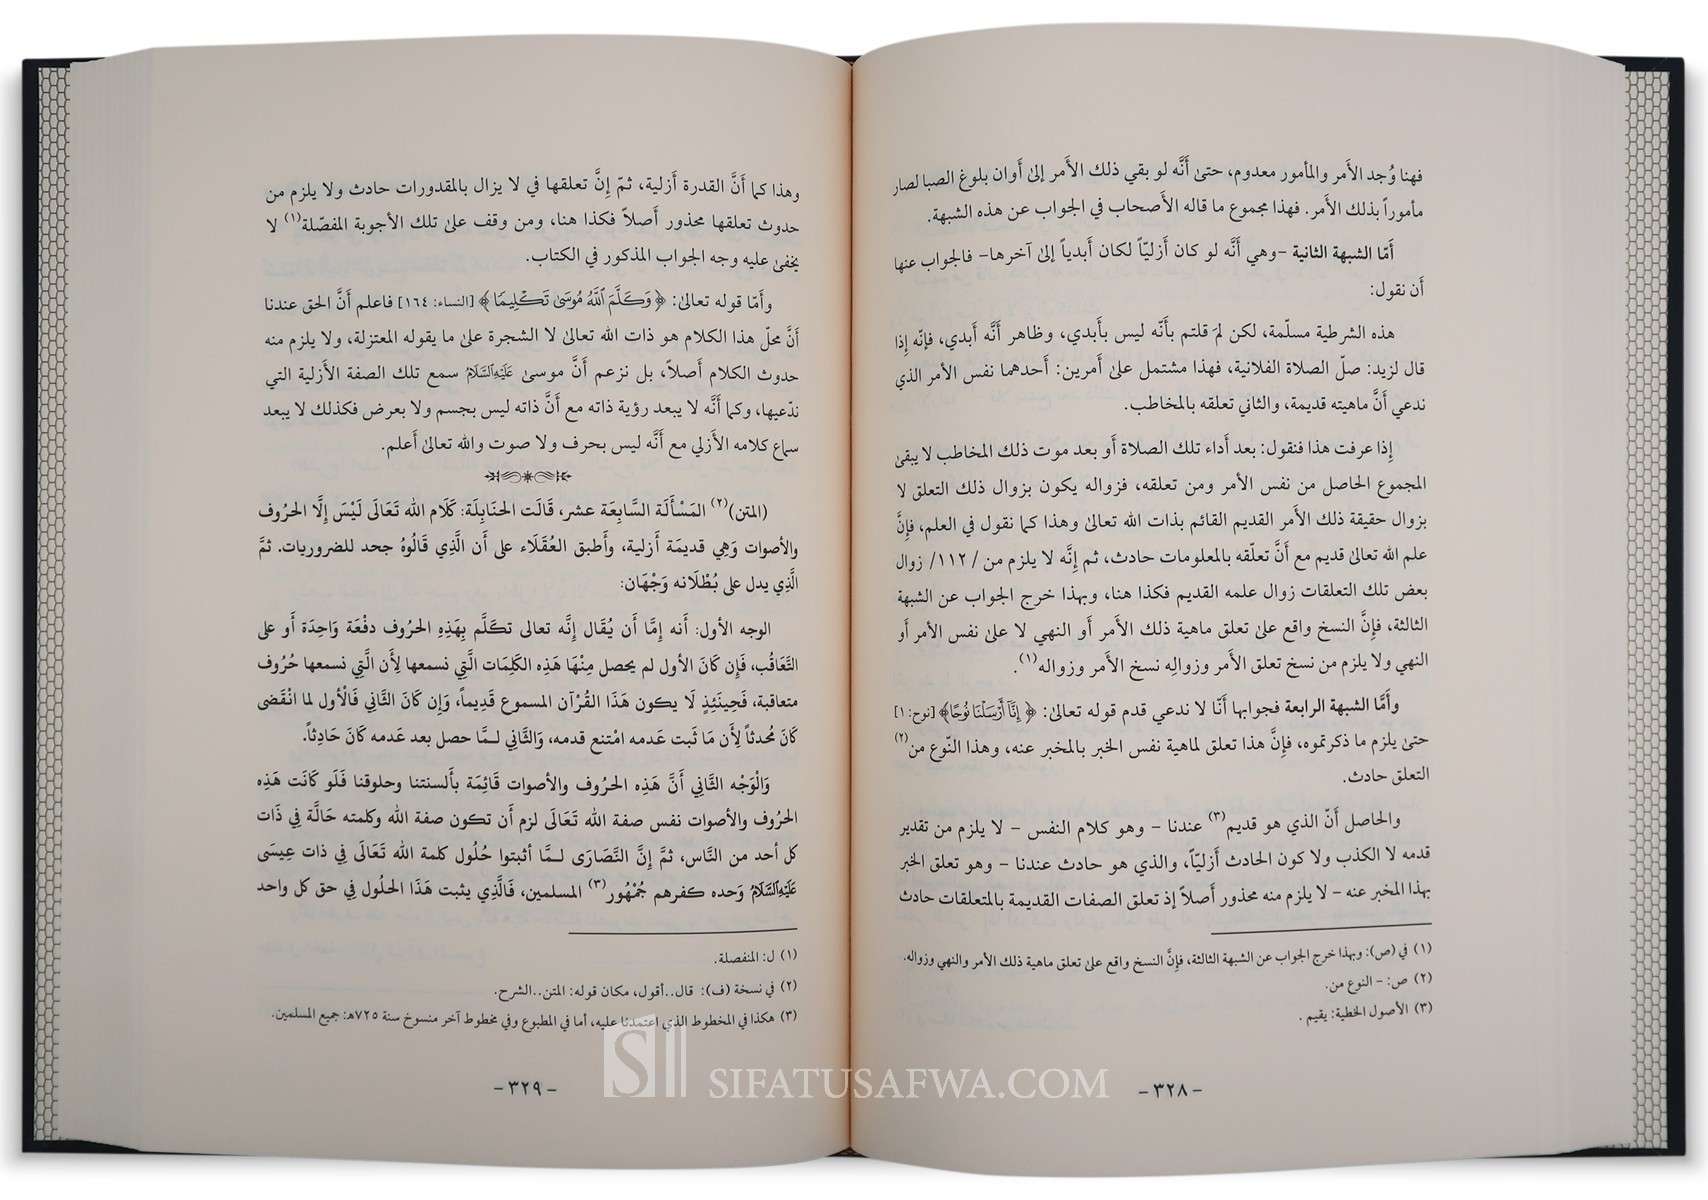 Al Malafat Al Sirriya : Al Rajul Al Fatak (Shredderman) 